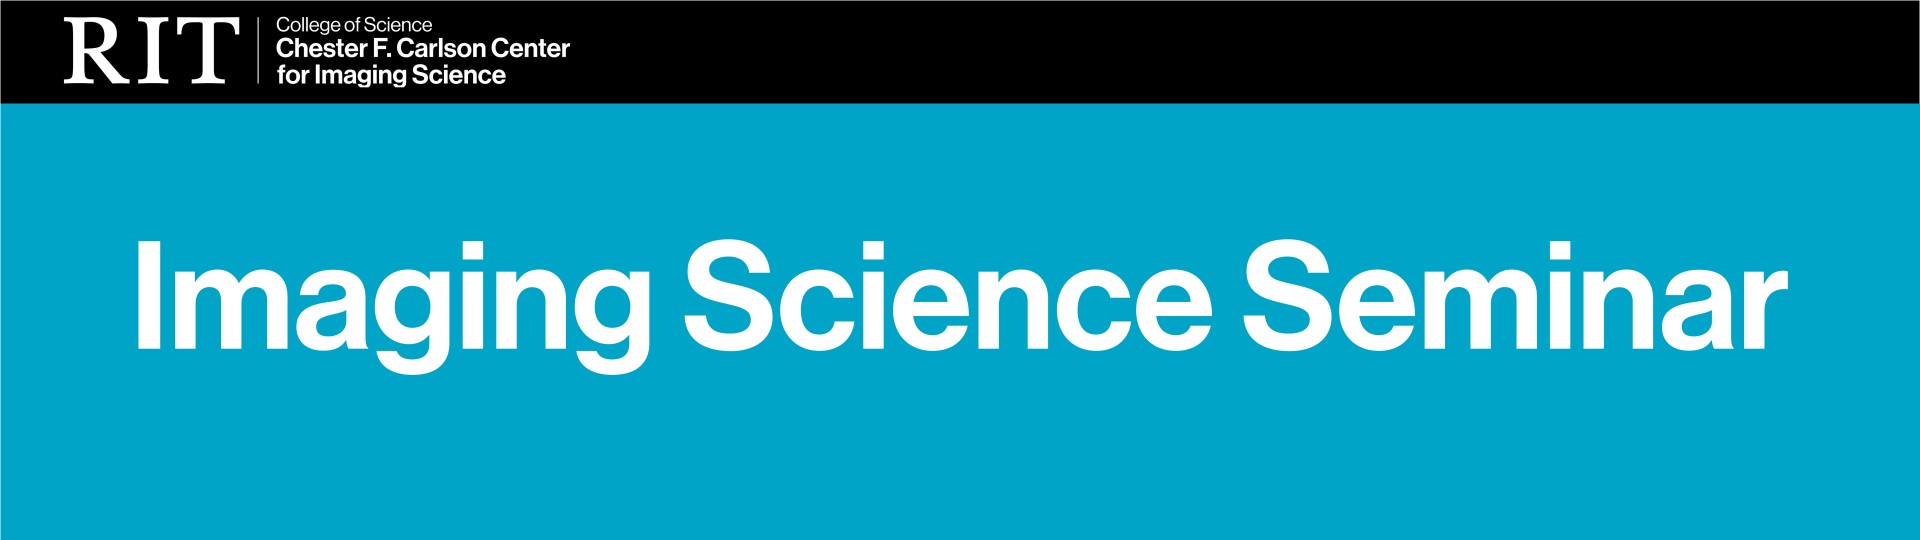 imaging science seminar banner